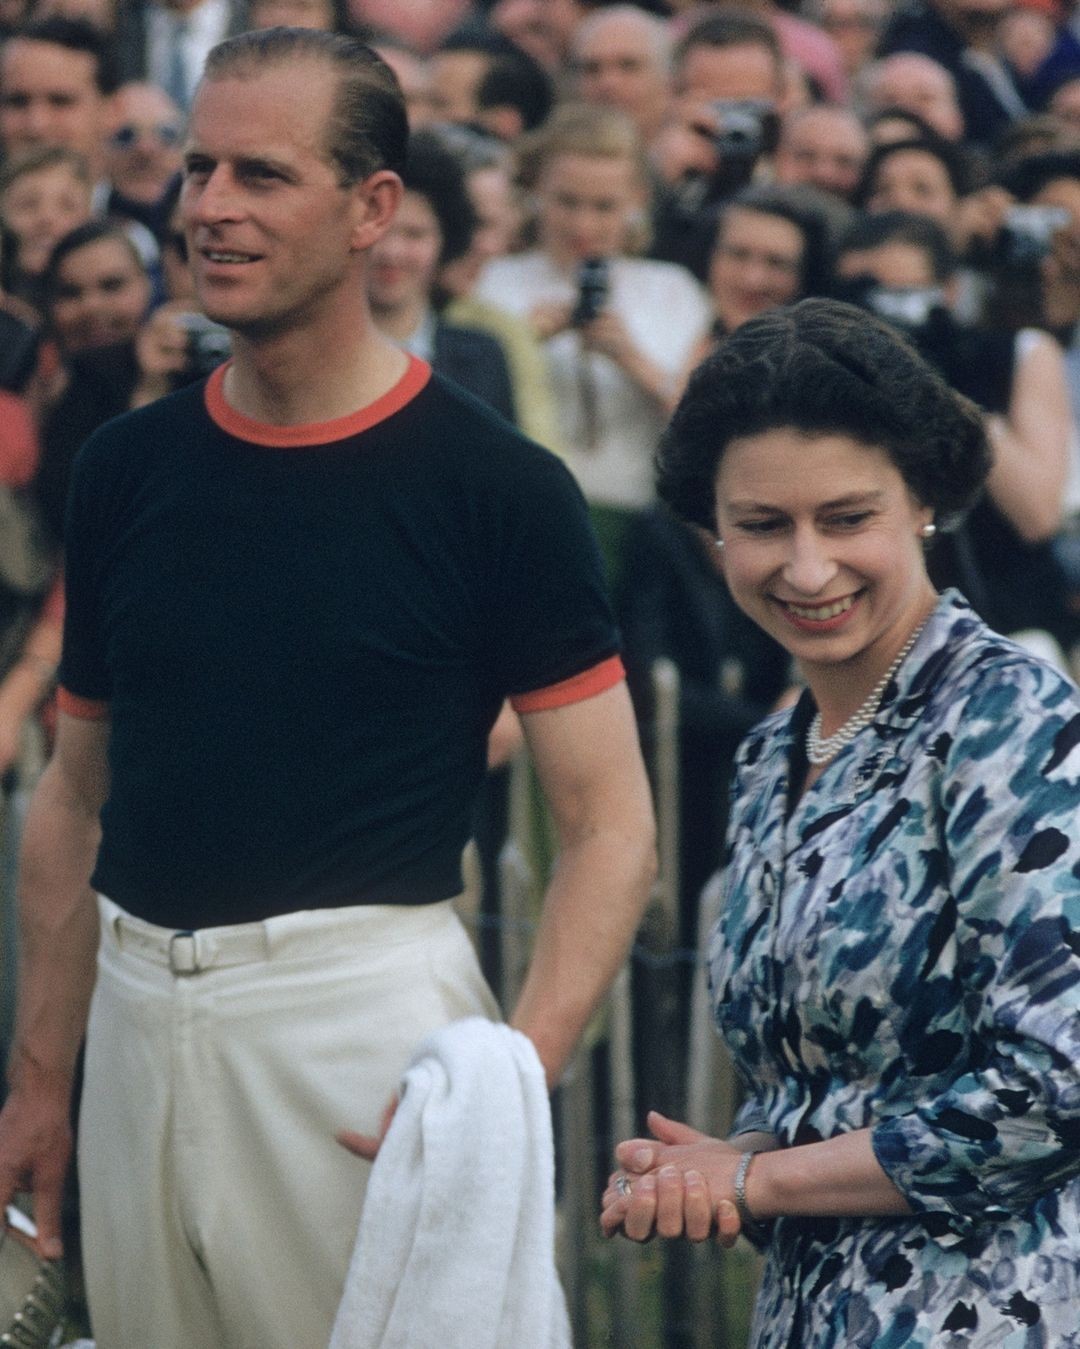 Aqui, durante a Windsor Cup, em 1955, o príncipe aparece com o uniforme oficial de seu time de polo, uma camiseta de algodão, acompanhada de calça de cintura alta, que ajuda a equilibrar sua silhueta e reforçar o porte atlético do príncipe  (Foto: Reprodução)